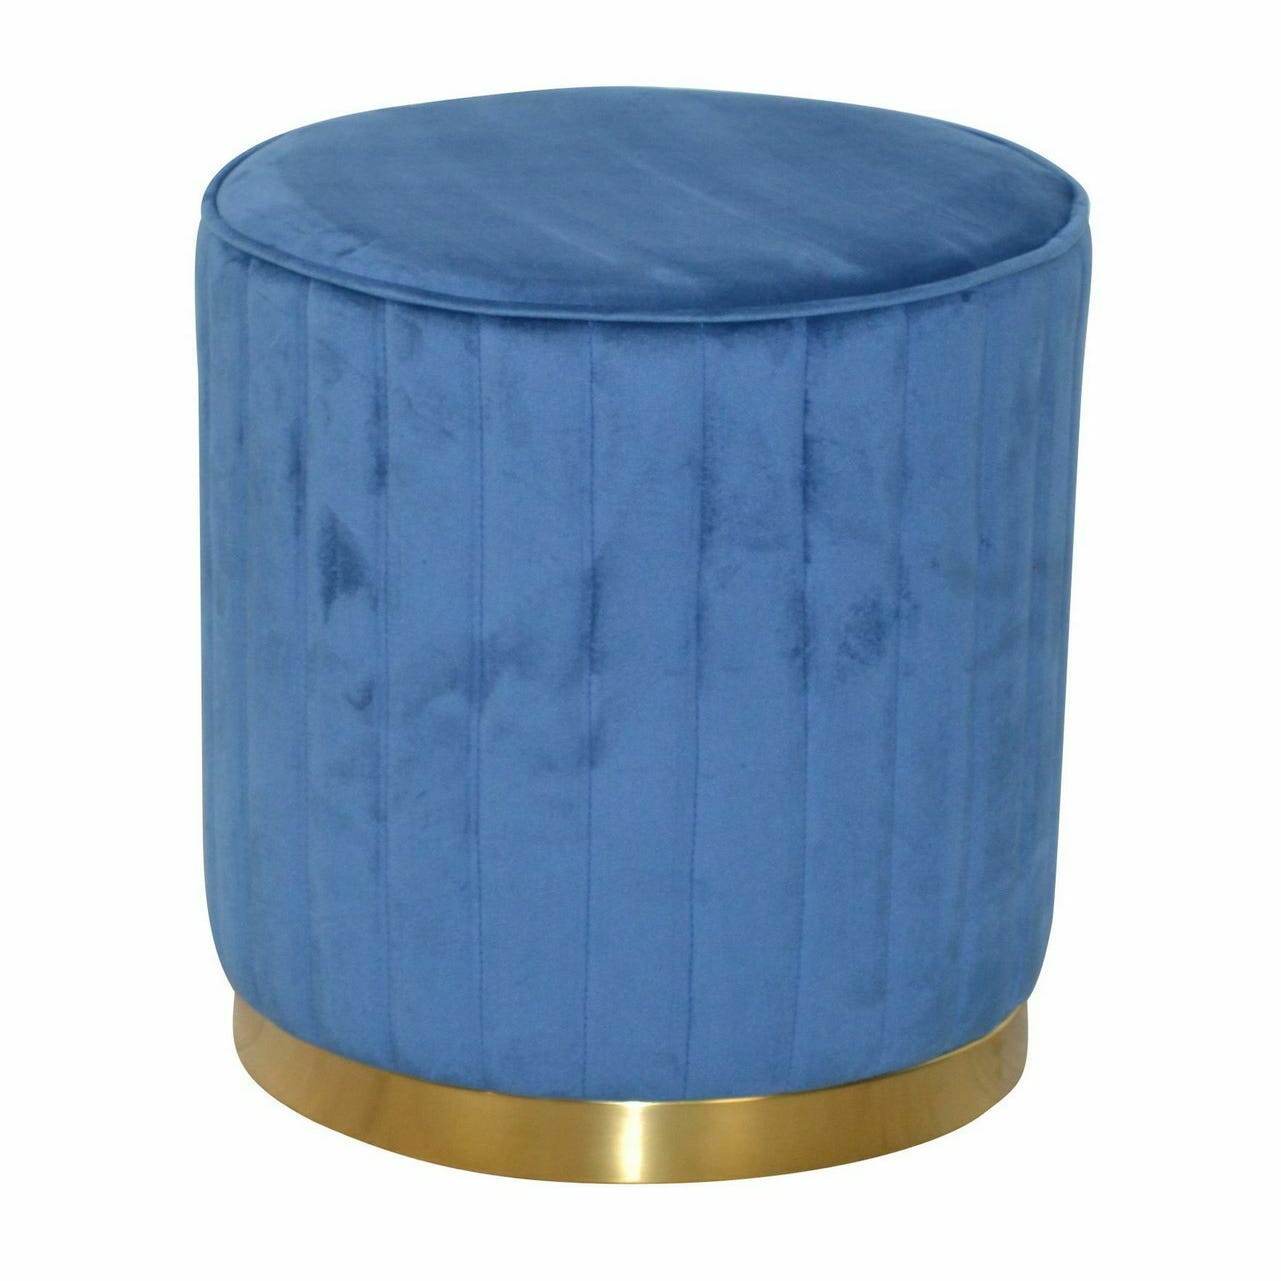 Repose-pied, tabouret pouf, tabouret bas pour salon ou chambre bleu  60x60x36 cm velours lqf25857 meuble pro - Conforama